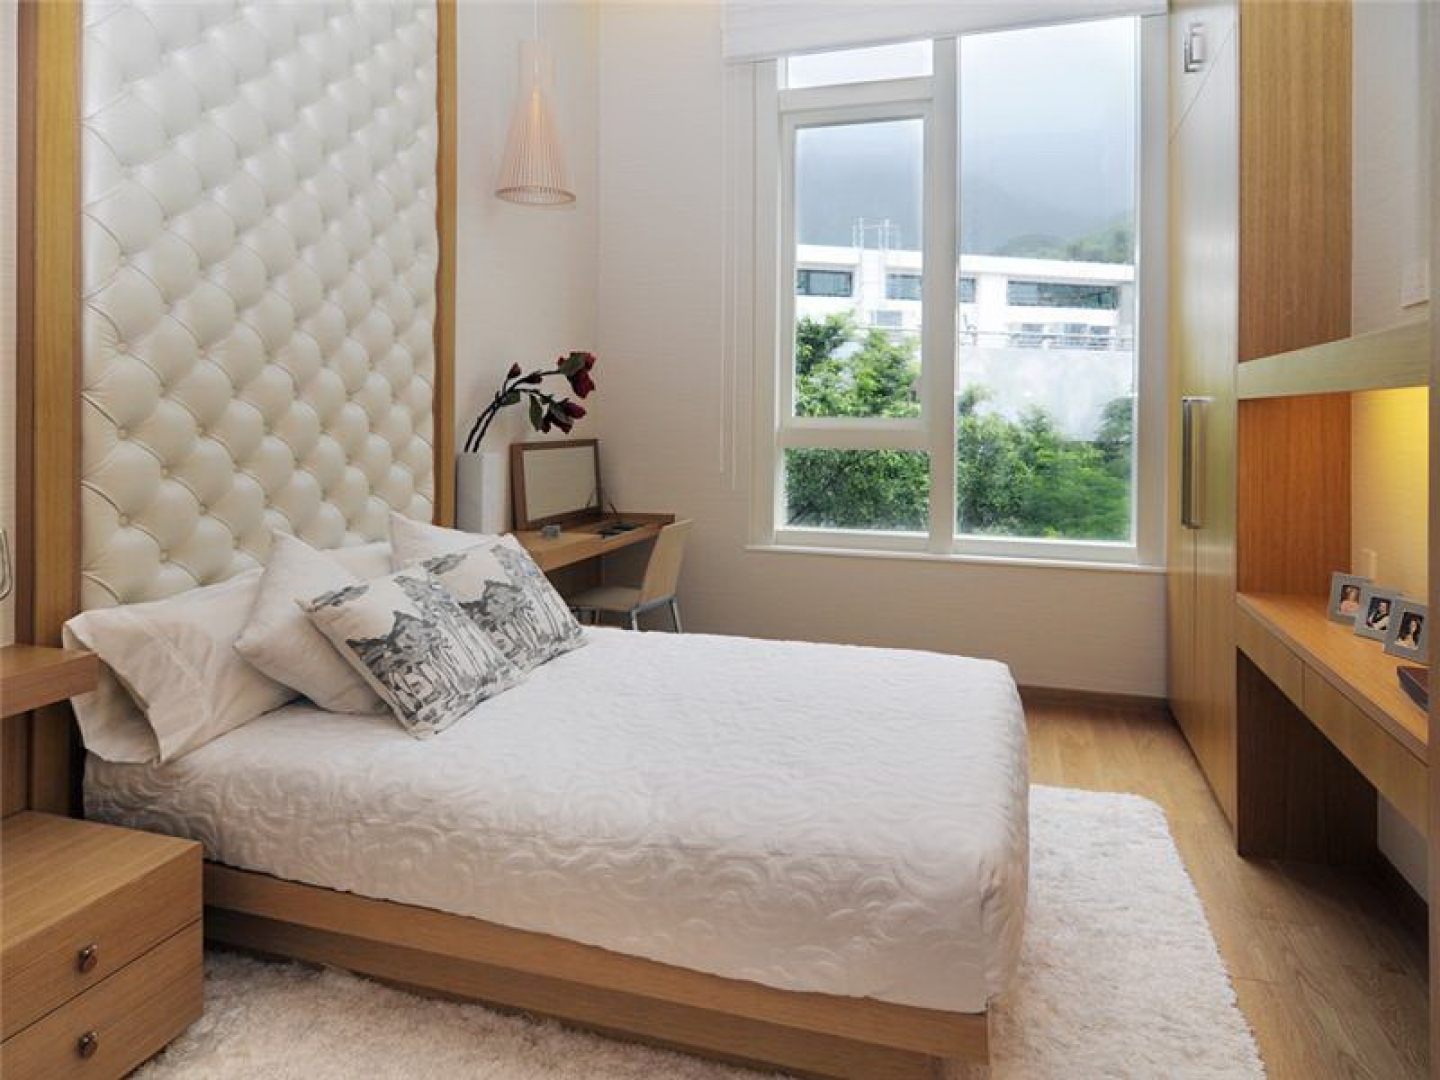 Спальня дизайн фото 12 кв м с двуспальной кроватью